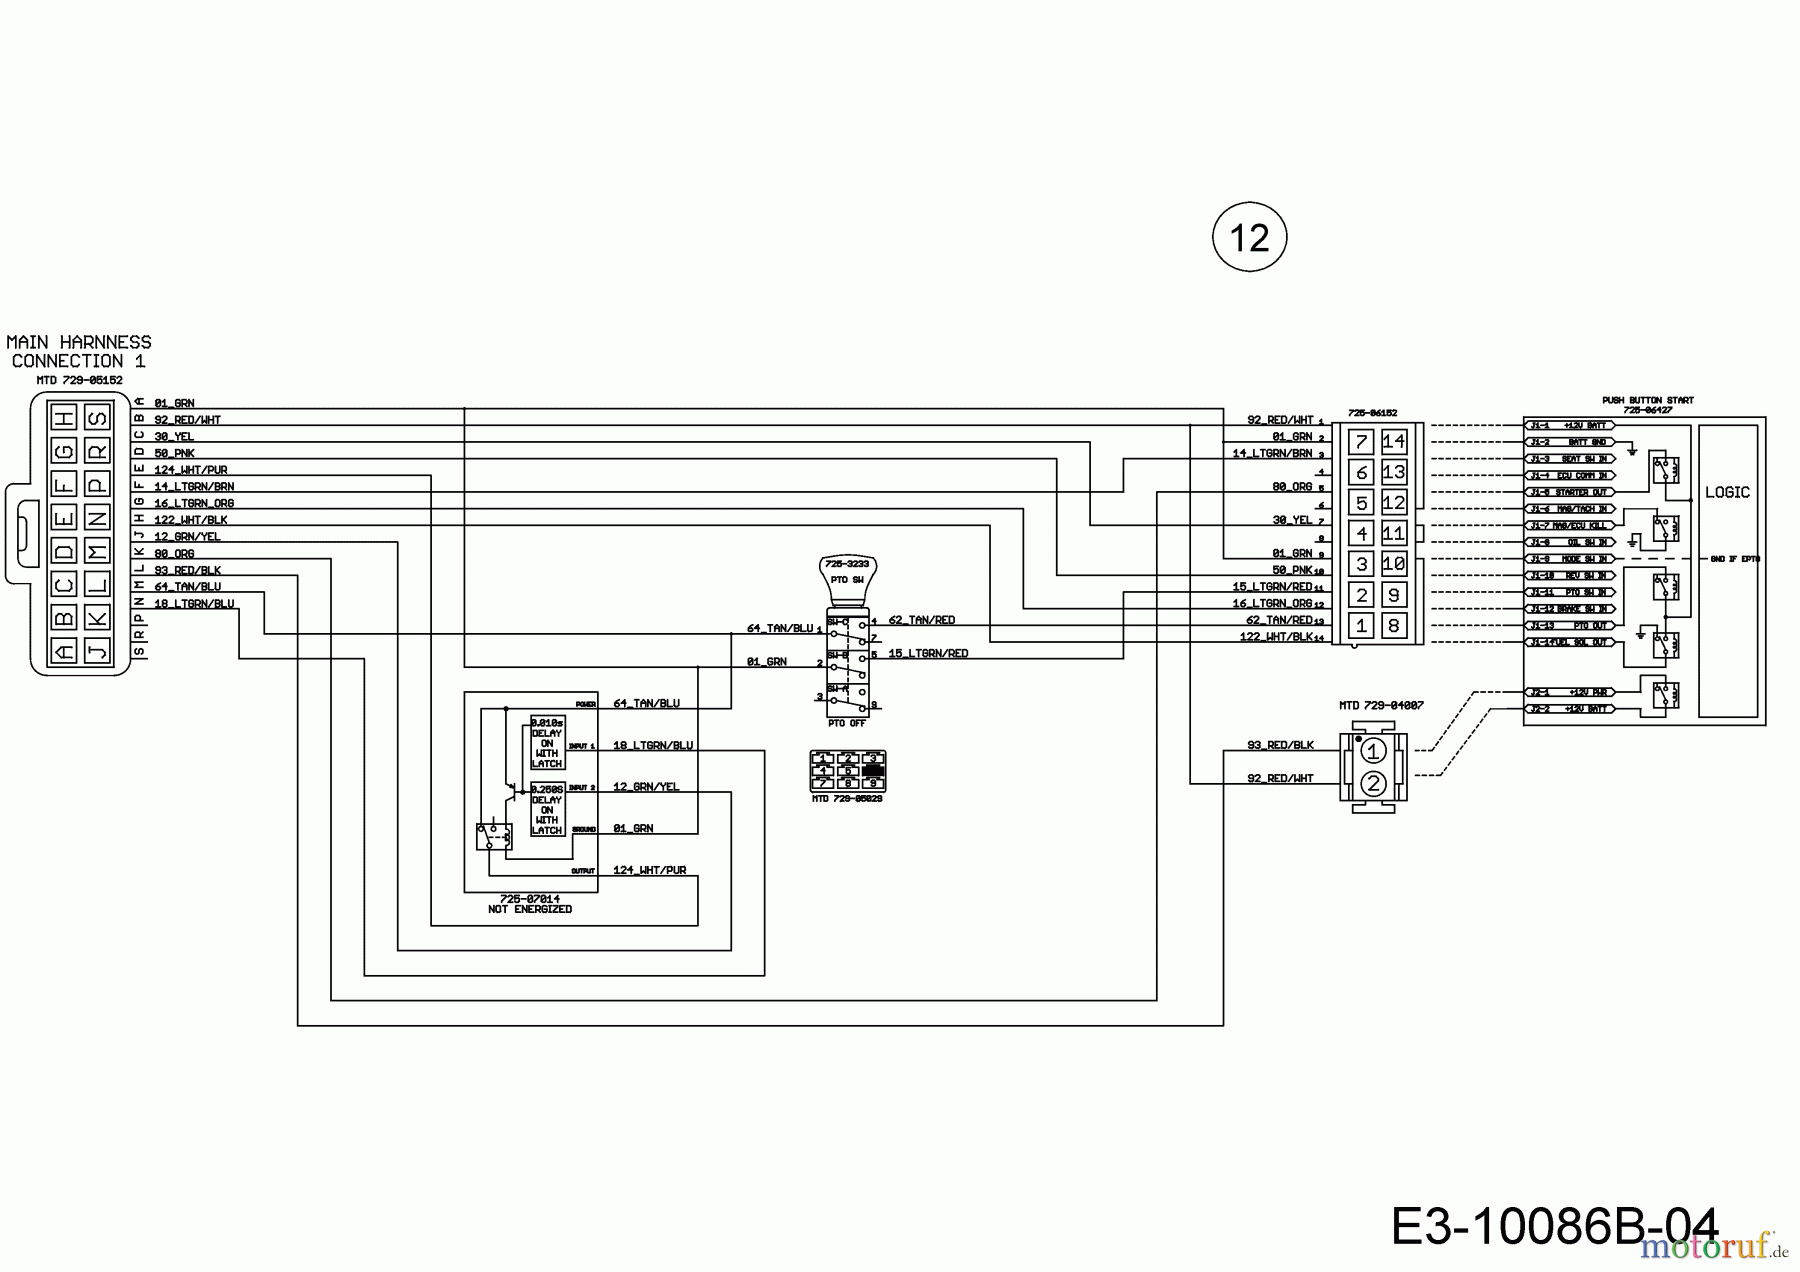  Wolf-Garten Rasentraktoren 106.220 H 13BAA1VR650  (2020) Schaltplan Elektromagnetkupplung